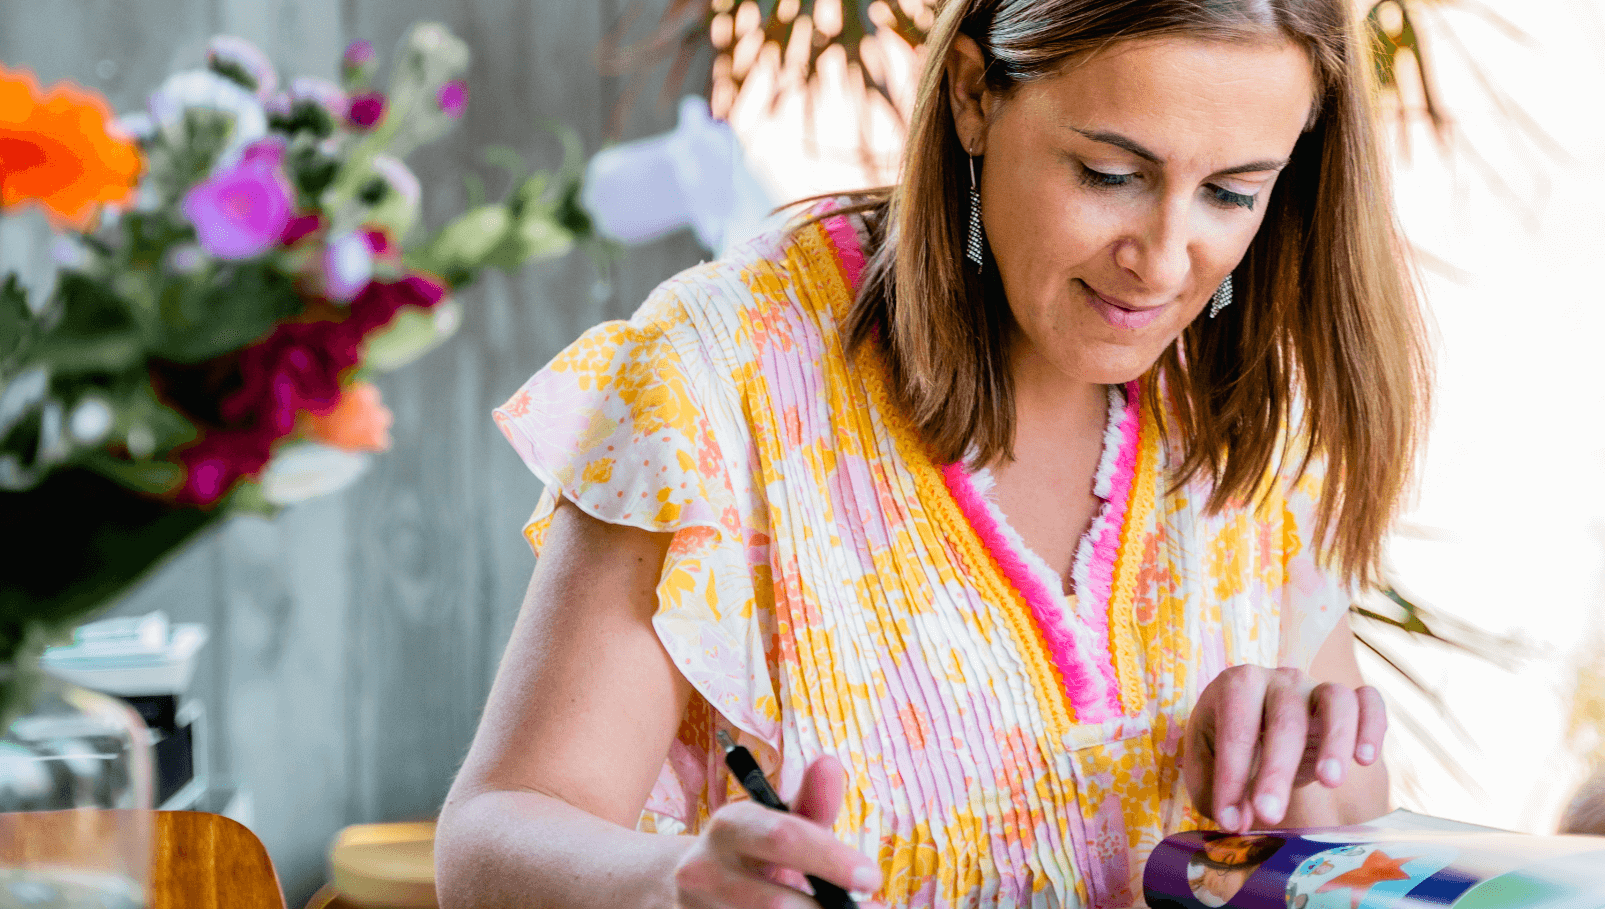 Een gefocuste vrouw in een jurk met levendige patronen, die schrijft of tekent in een kleurrijk dagboek, gelegen naast een boeket verse bloemen met een rustieke houten achtergrond.